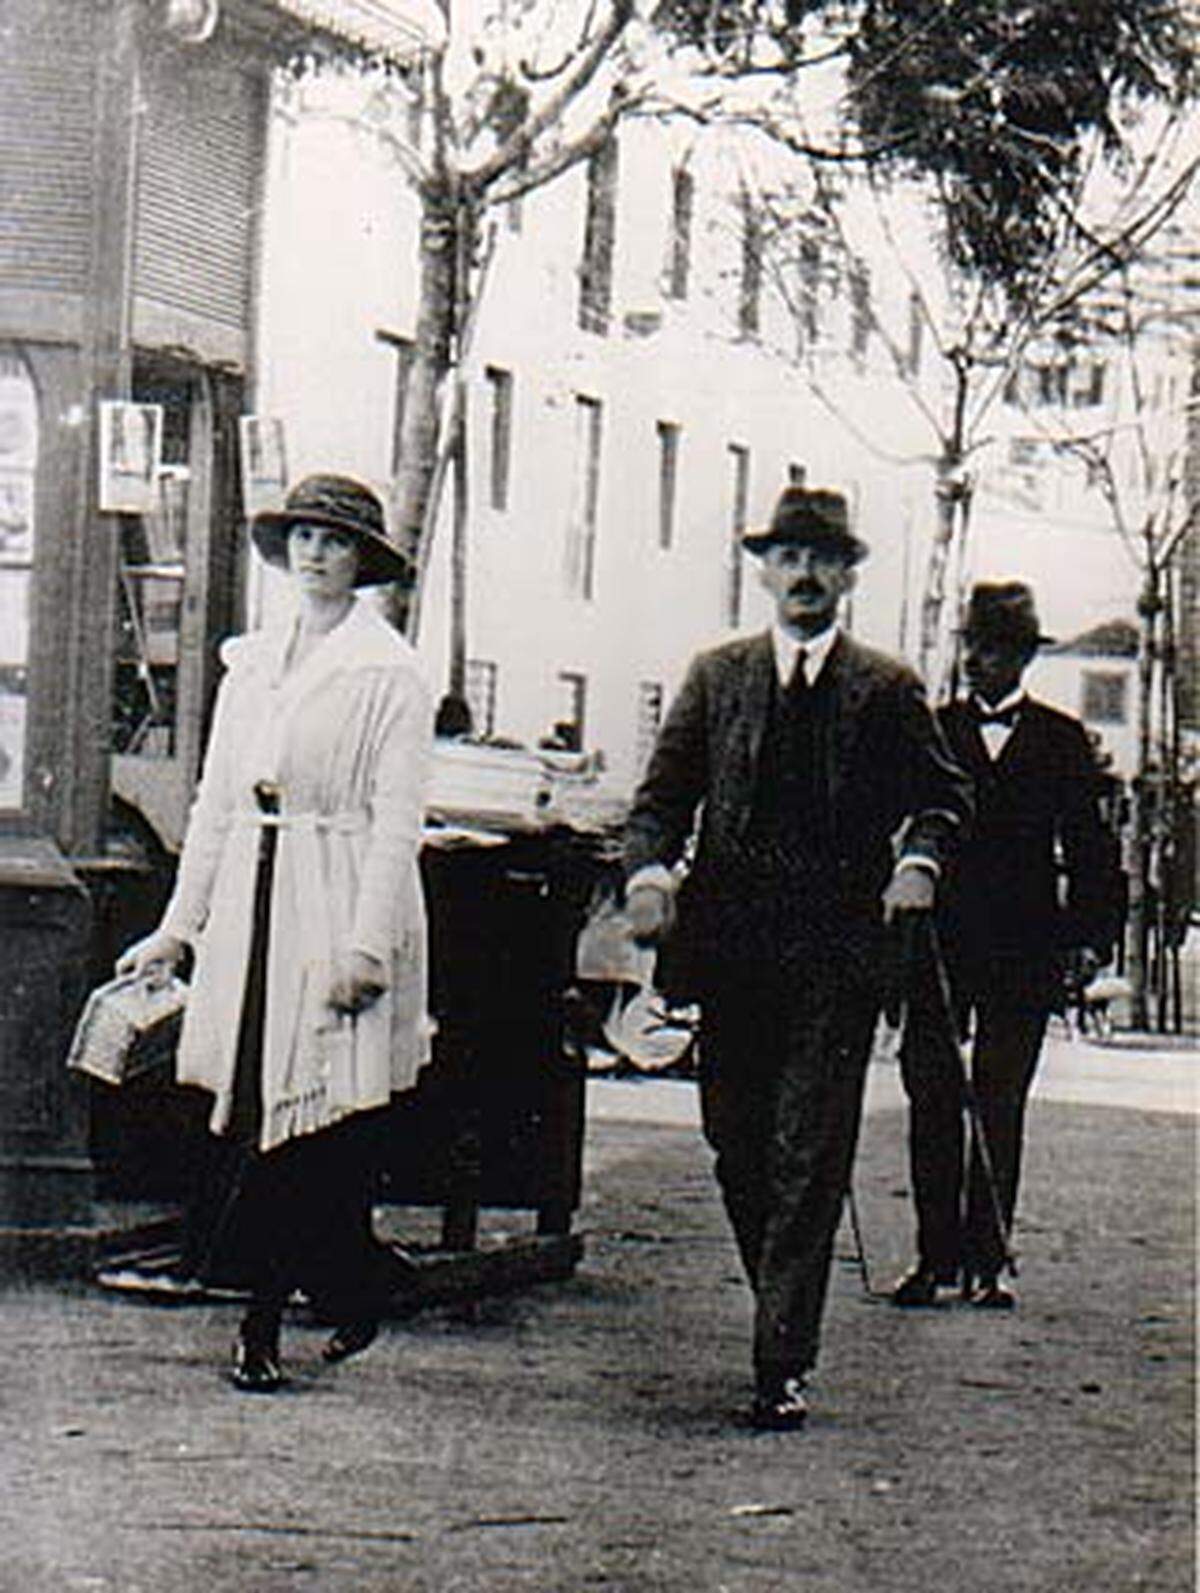 Ende 1921 wurden Karl und Zita ins Exil auf der portugiesischen Insel Madeira geschickt, wo Karl am 1. April 1922 an den Folgen einer Lungenentzündung starb. Seine Witwe trug von da an bis an ihr Lebensende schwarz.